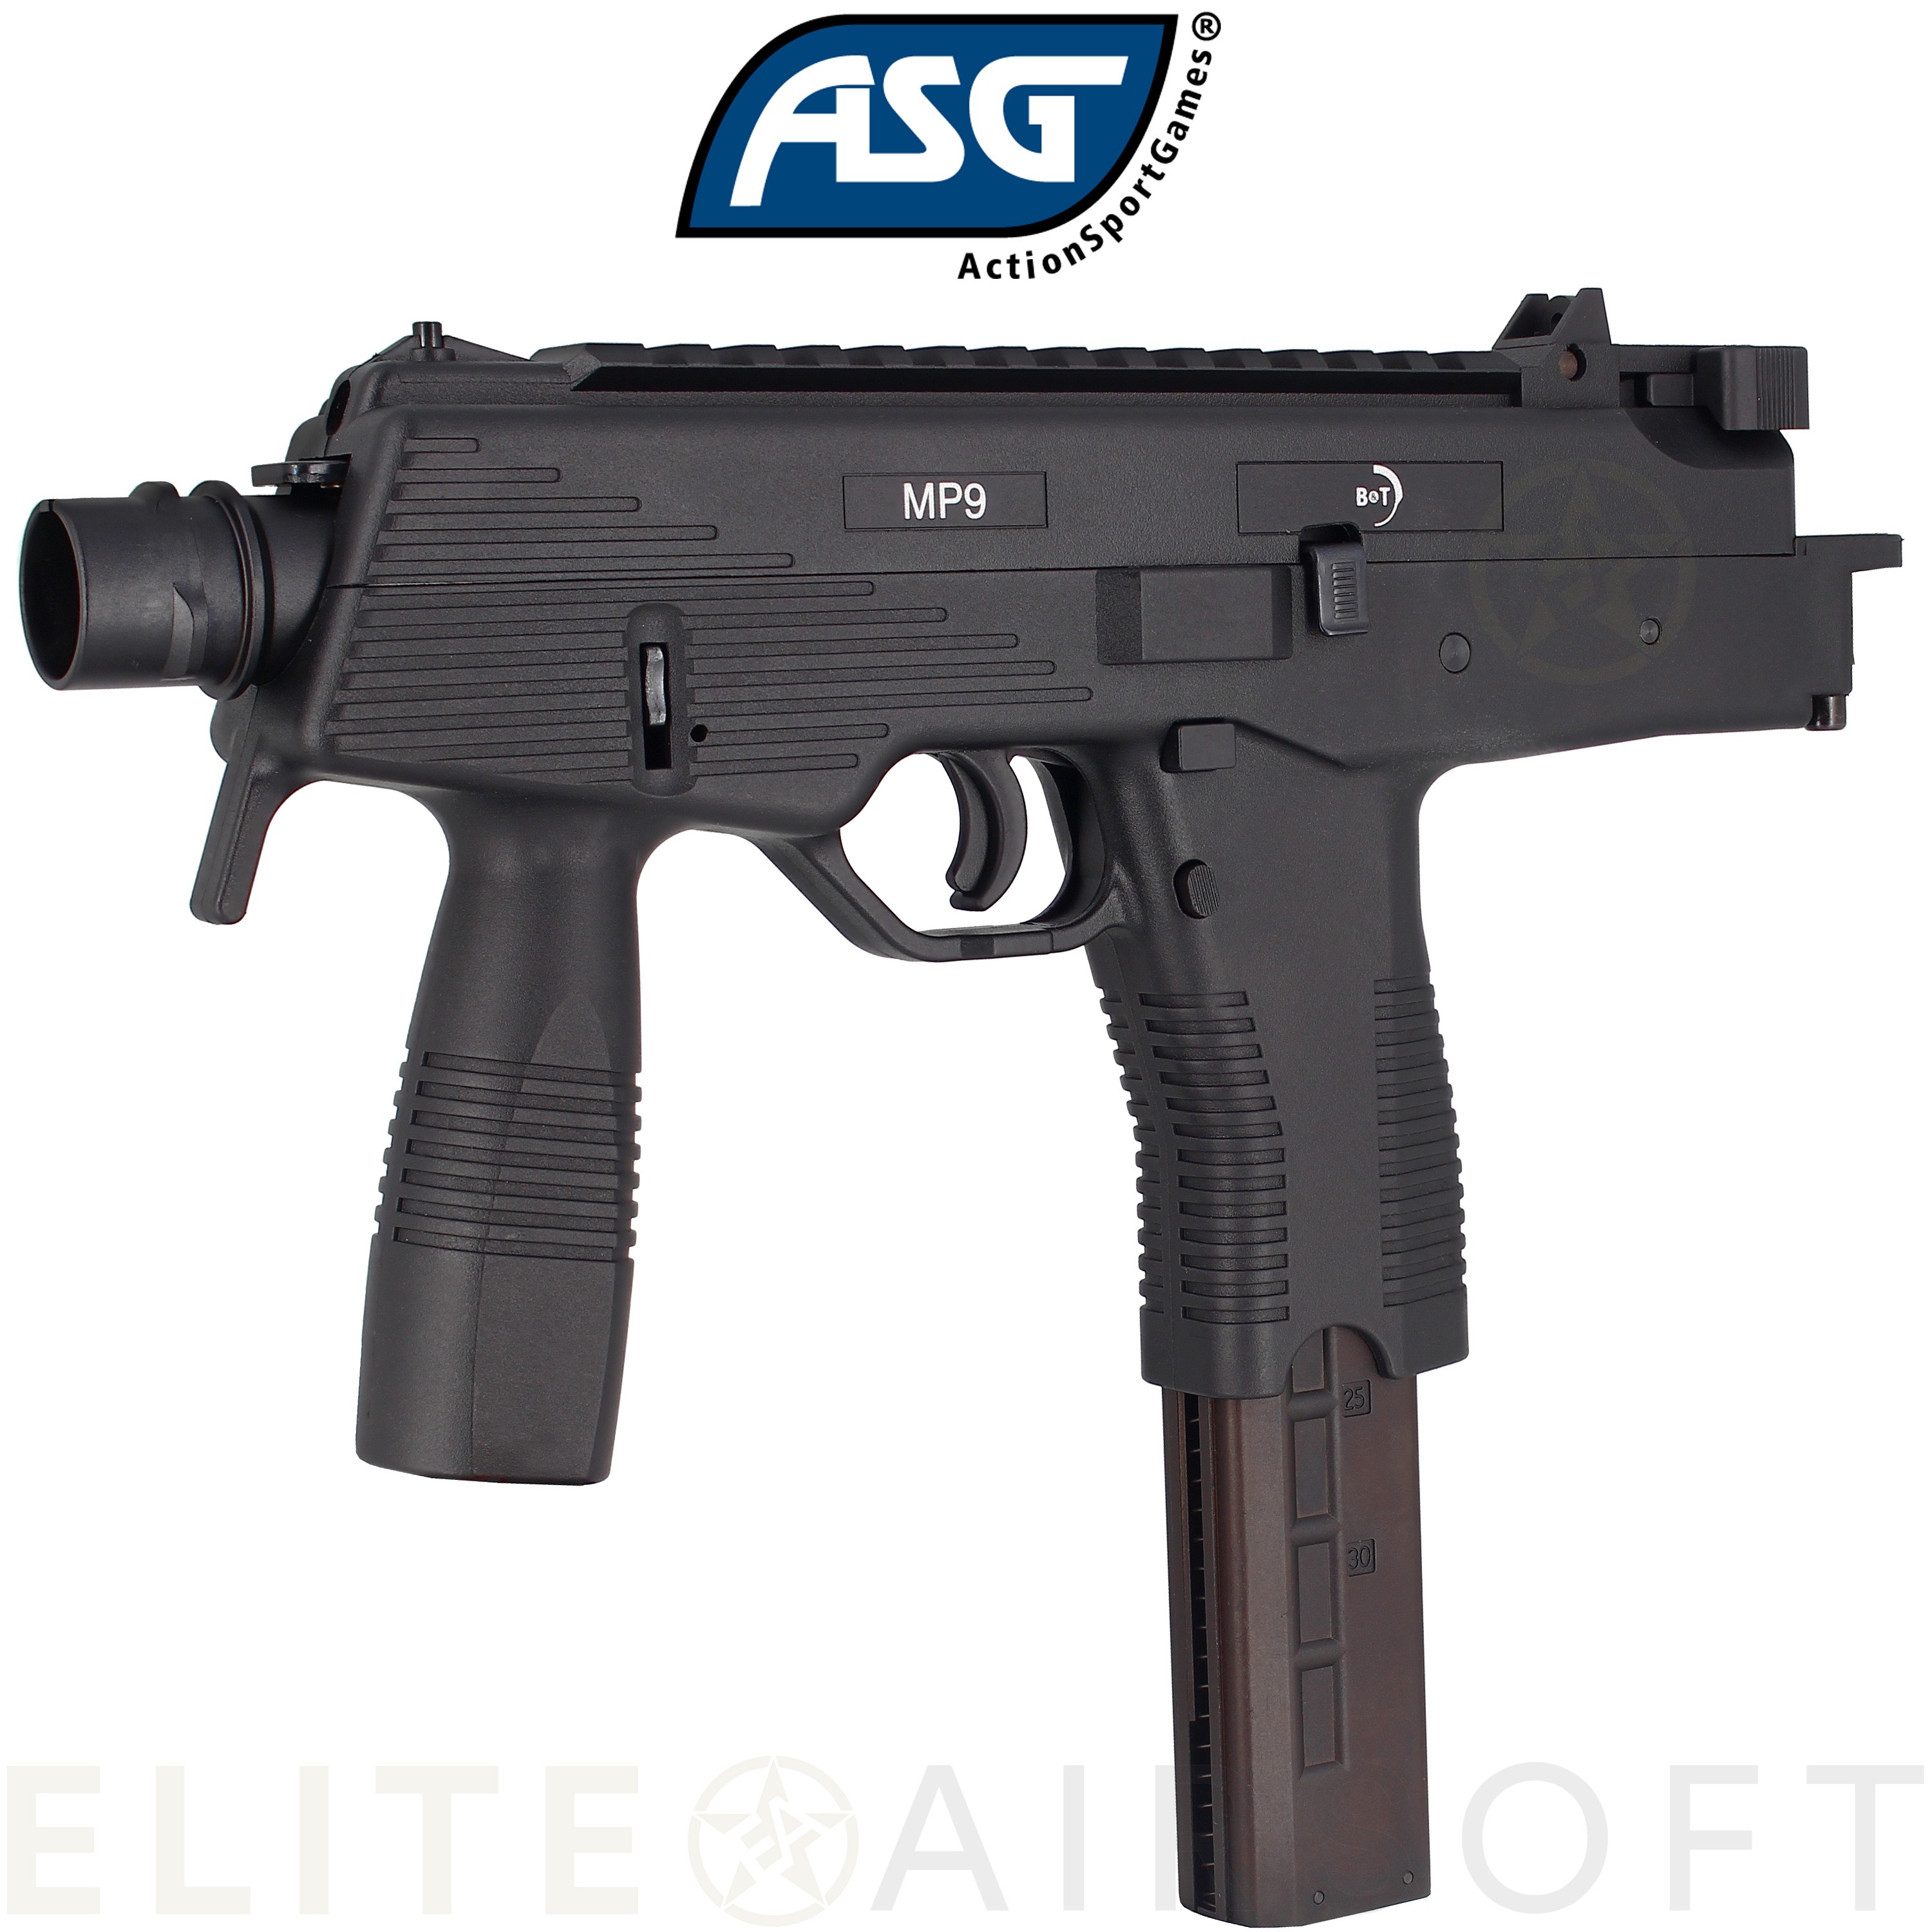 ASG - Pistolet mitrailleur MP9 A1 B&T - GBBR - Gaz - Noir (1.2 joules)